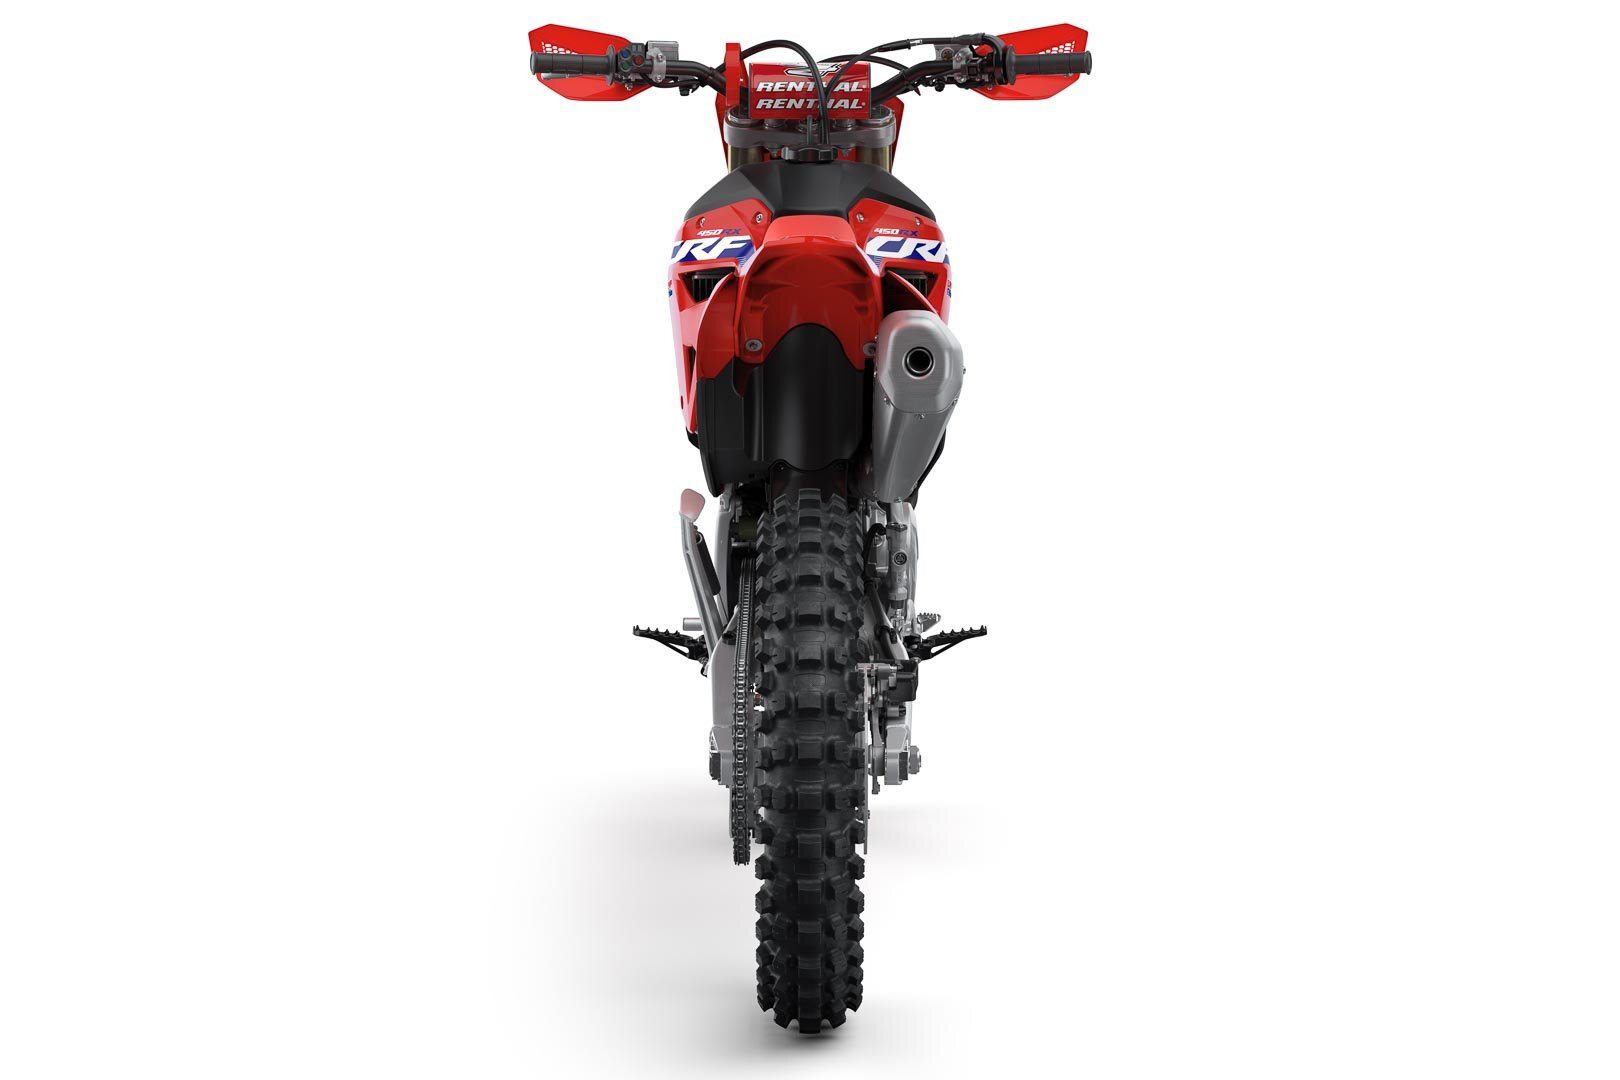 2021-Honda-CRF450RX-First-Look-off-road-cross-country-gncc-racing-motorcycle-5.jpg